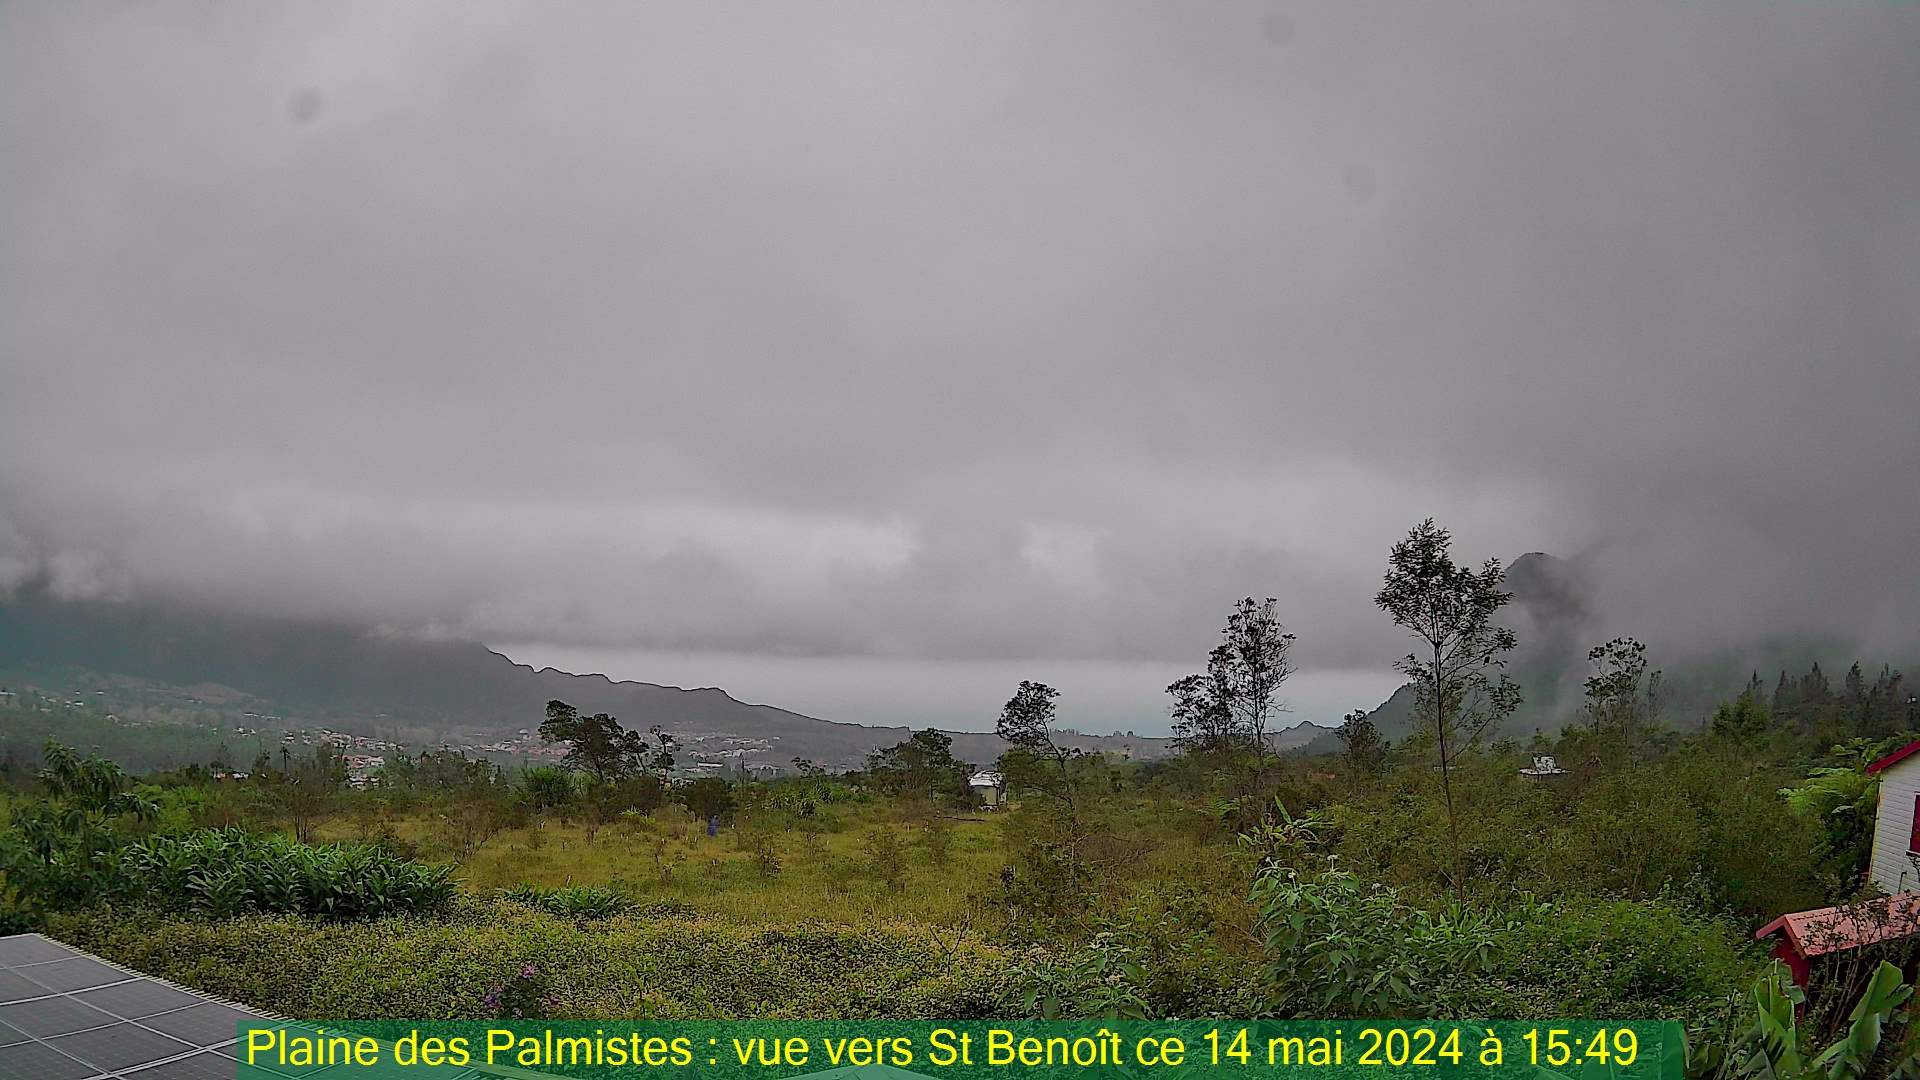 Saint-Denis (Réunion) Søn. 15:50